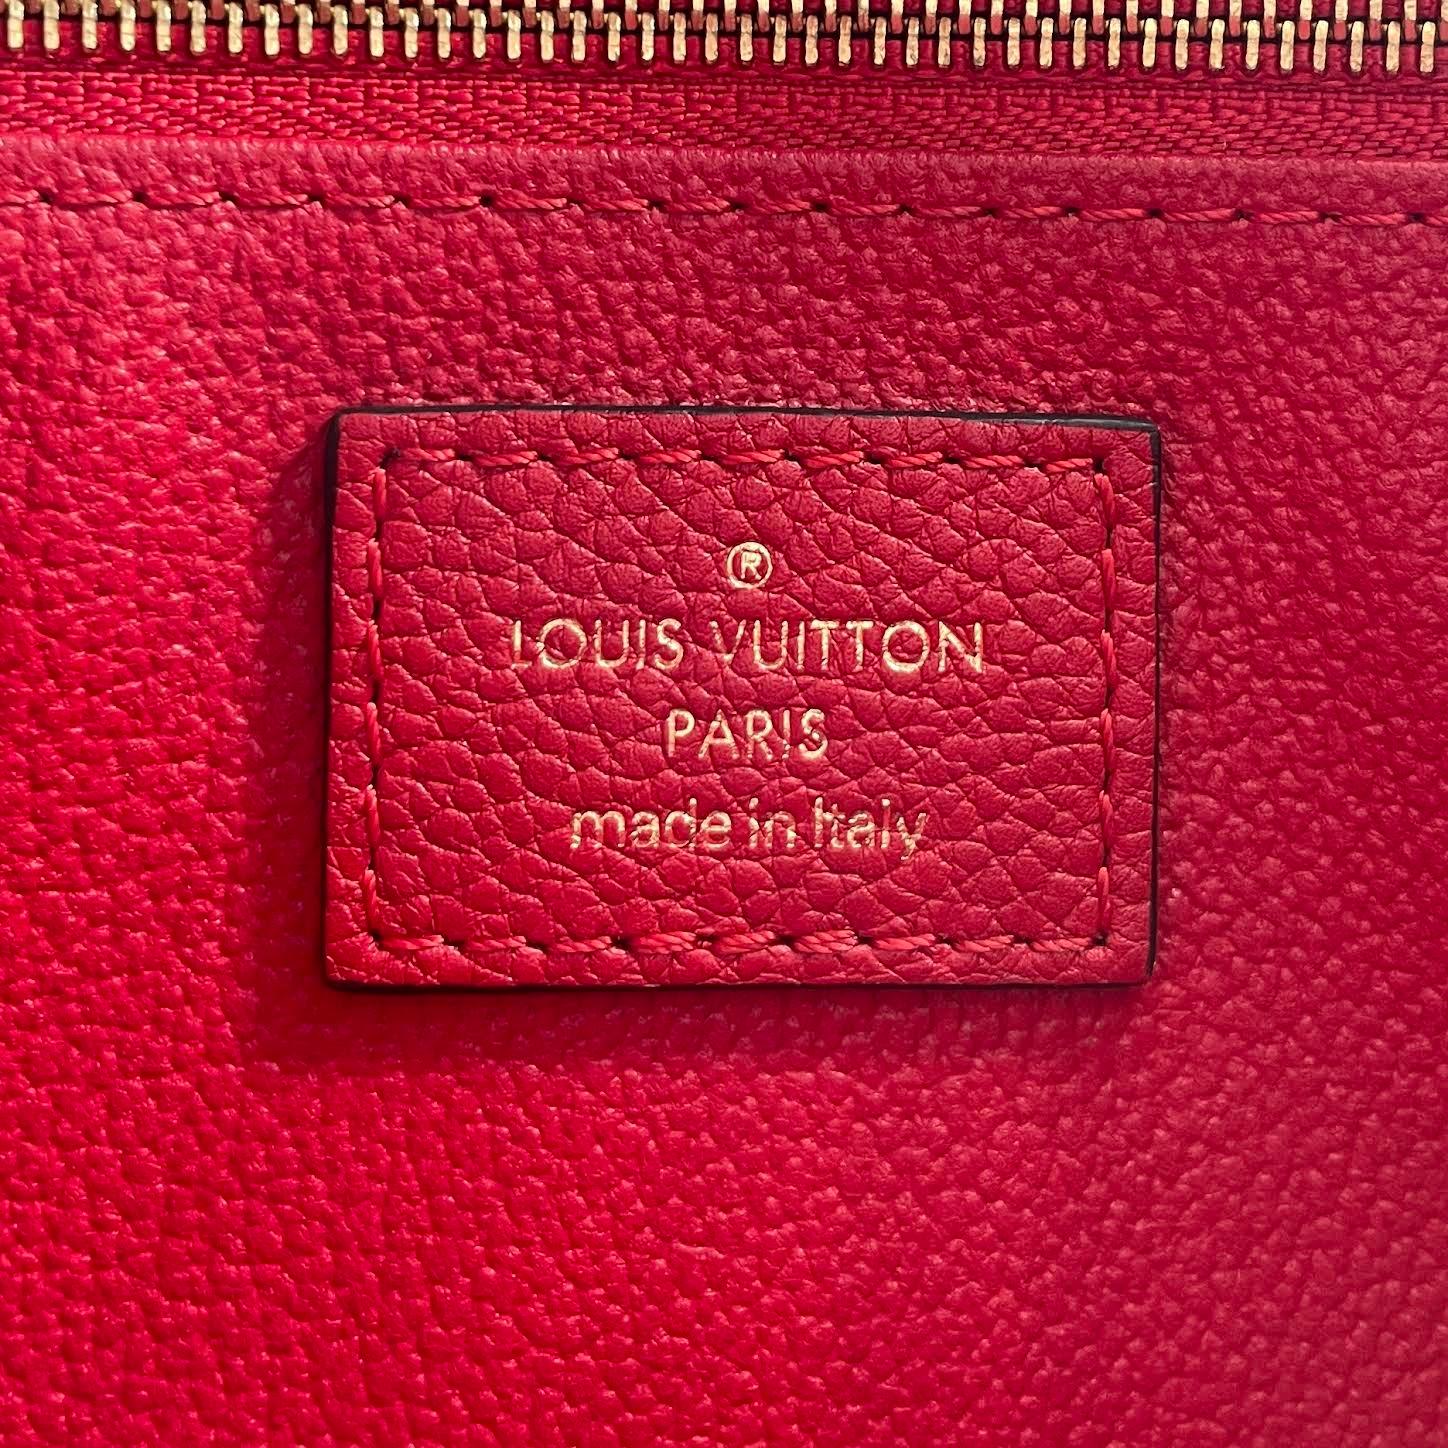 Authenticated Louis Vuitton Monogram Pallas Beauty Case Brown